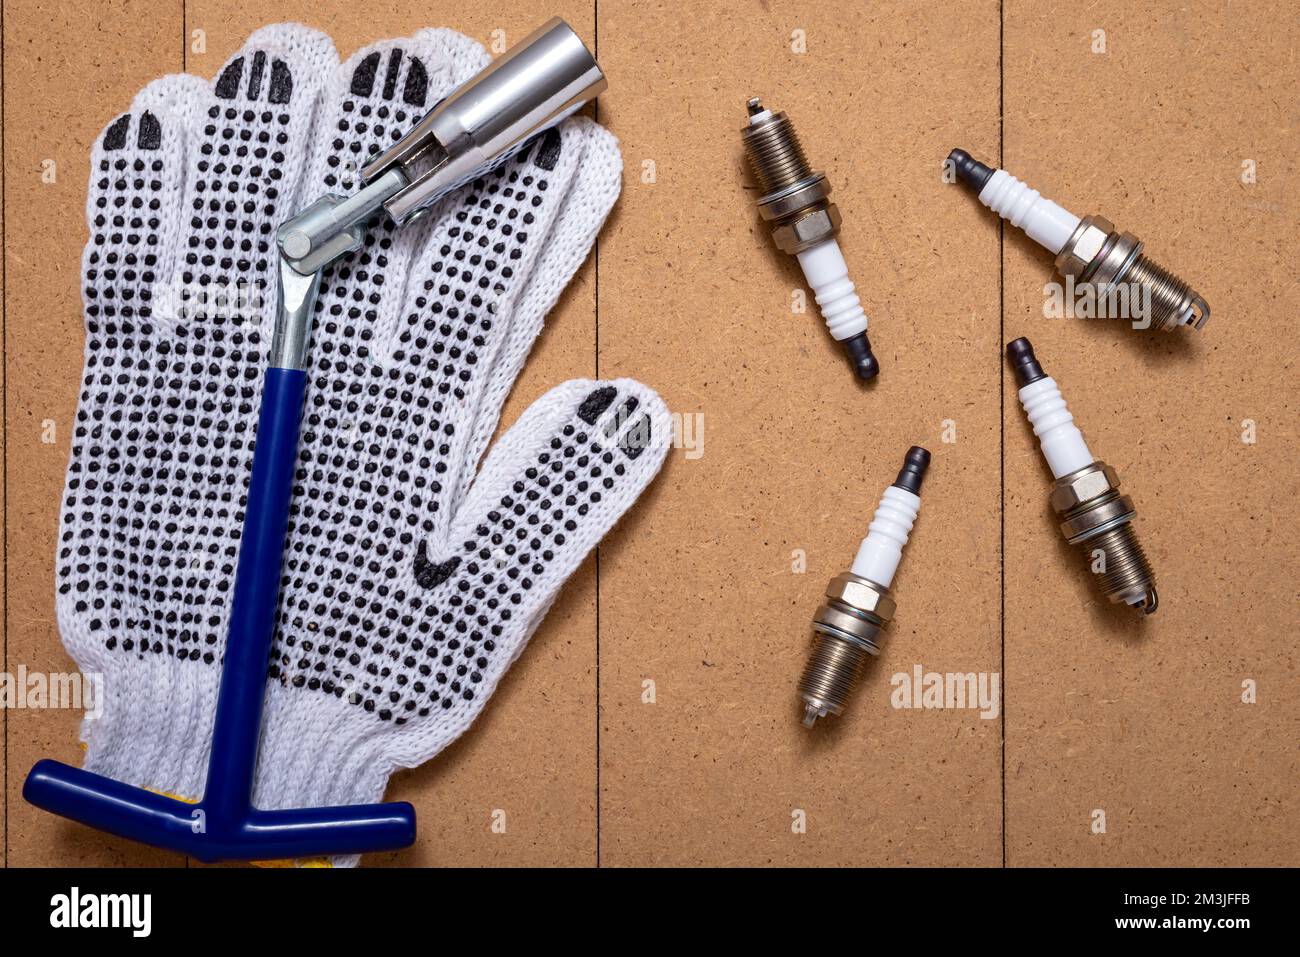 Zündkerzen, Zündkerzenschlüssel und Schutzhandschuhe auf Holztisch. Stockfoto